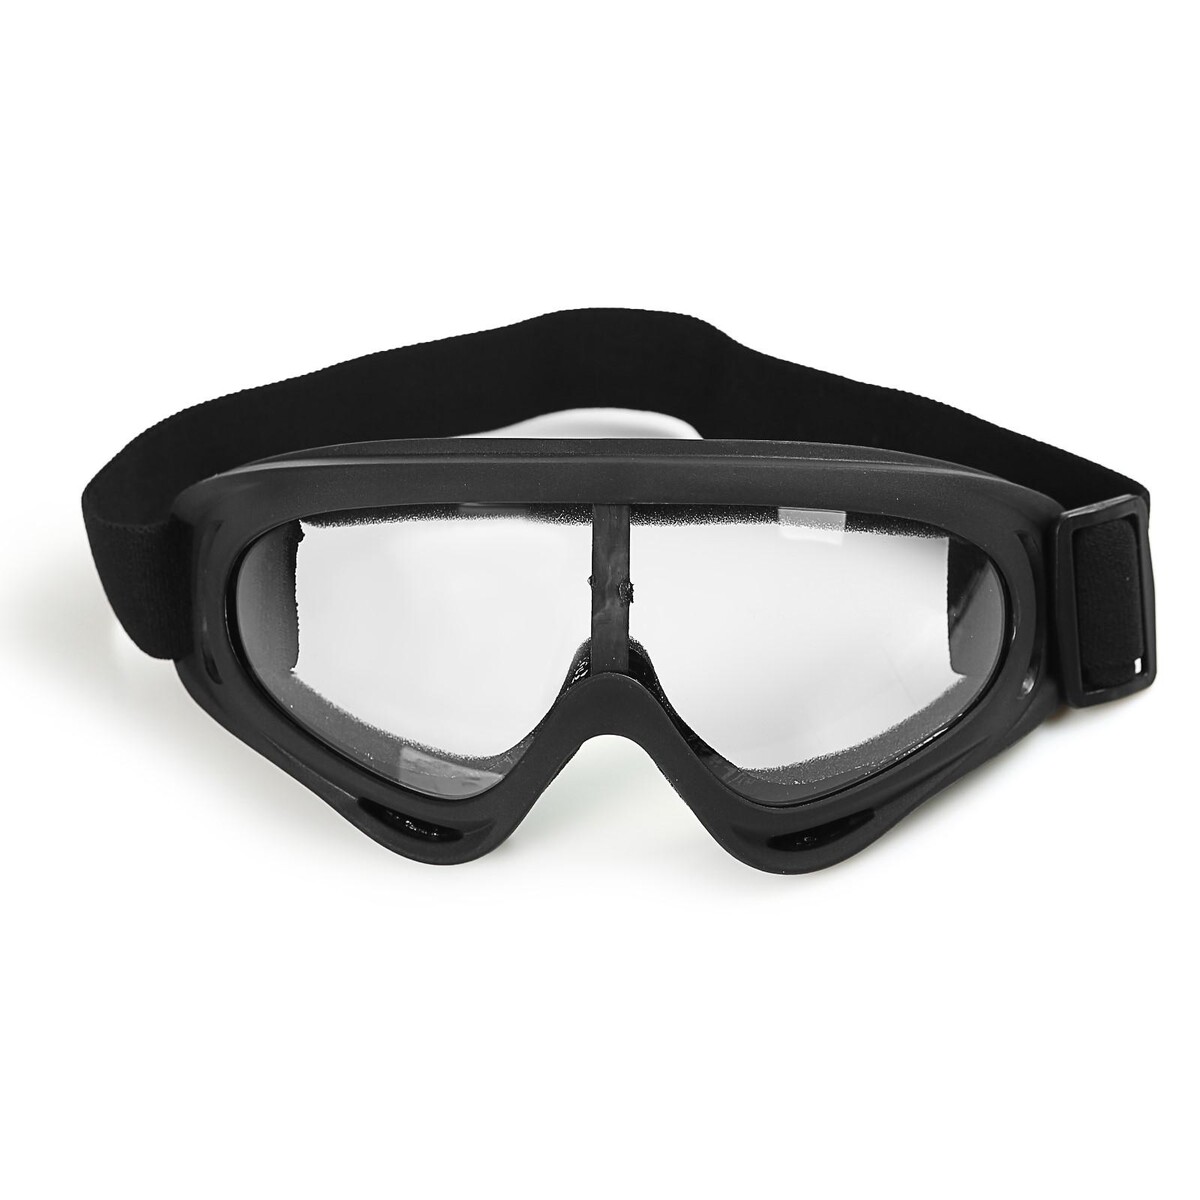 Очки для езды на мототехнике, стекло прозрачное, цвет черный очки маска для езды на мототехнике стекло прозрачное бомбер ом 22